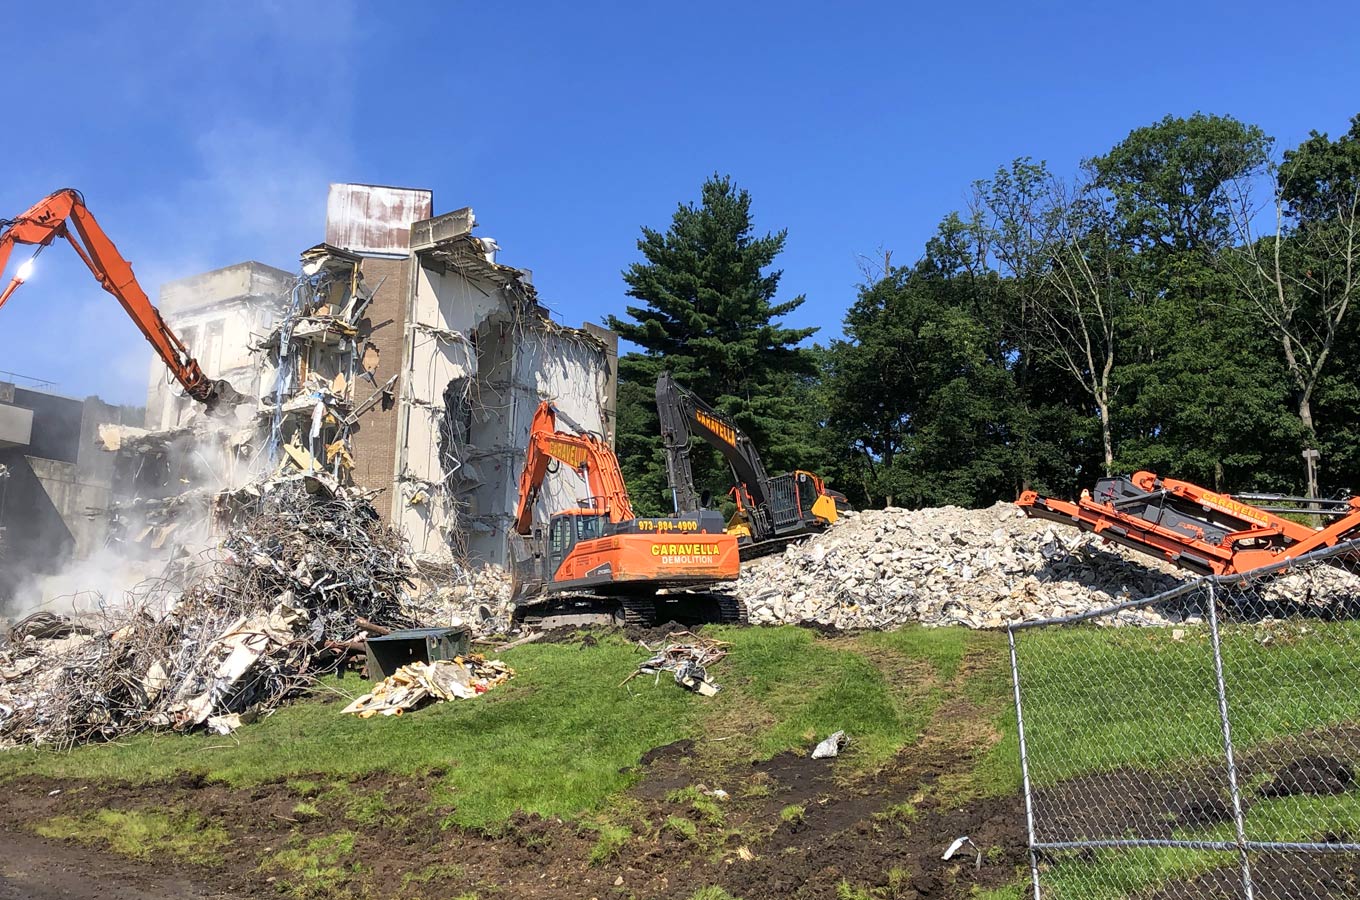 Demolition Services in Fairfield, NJ 07004 | Caravella Demolition